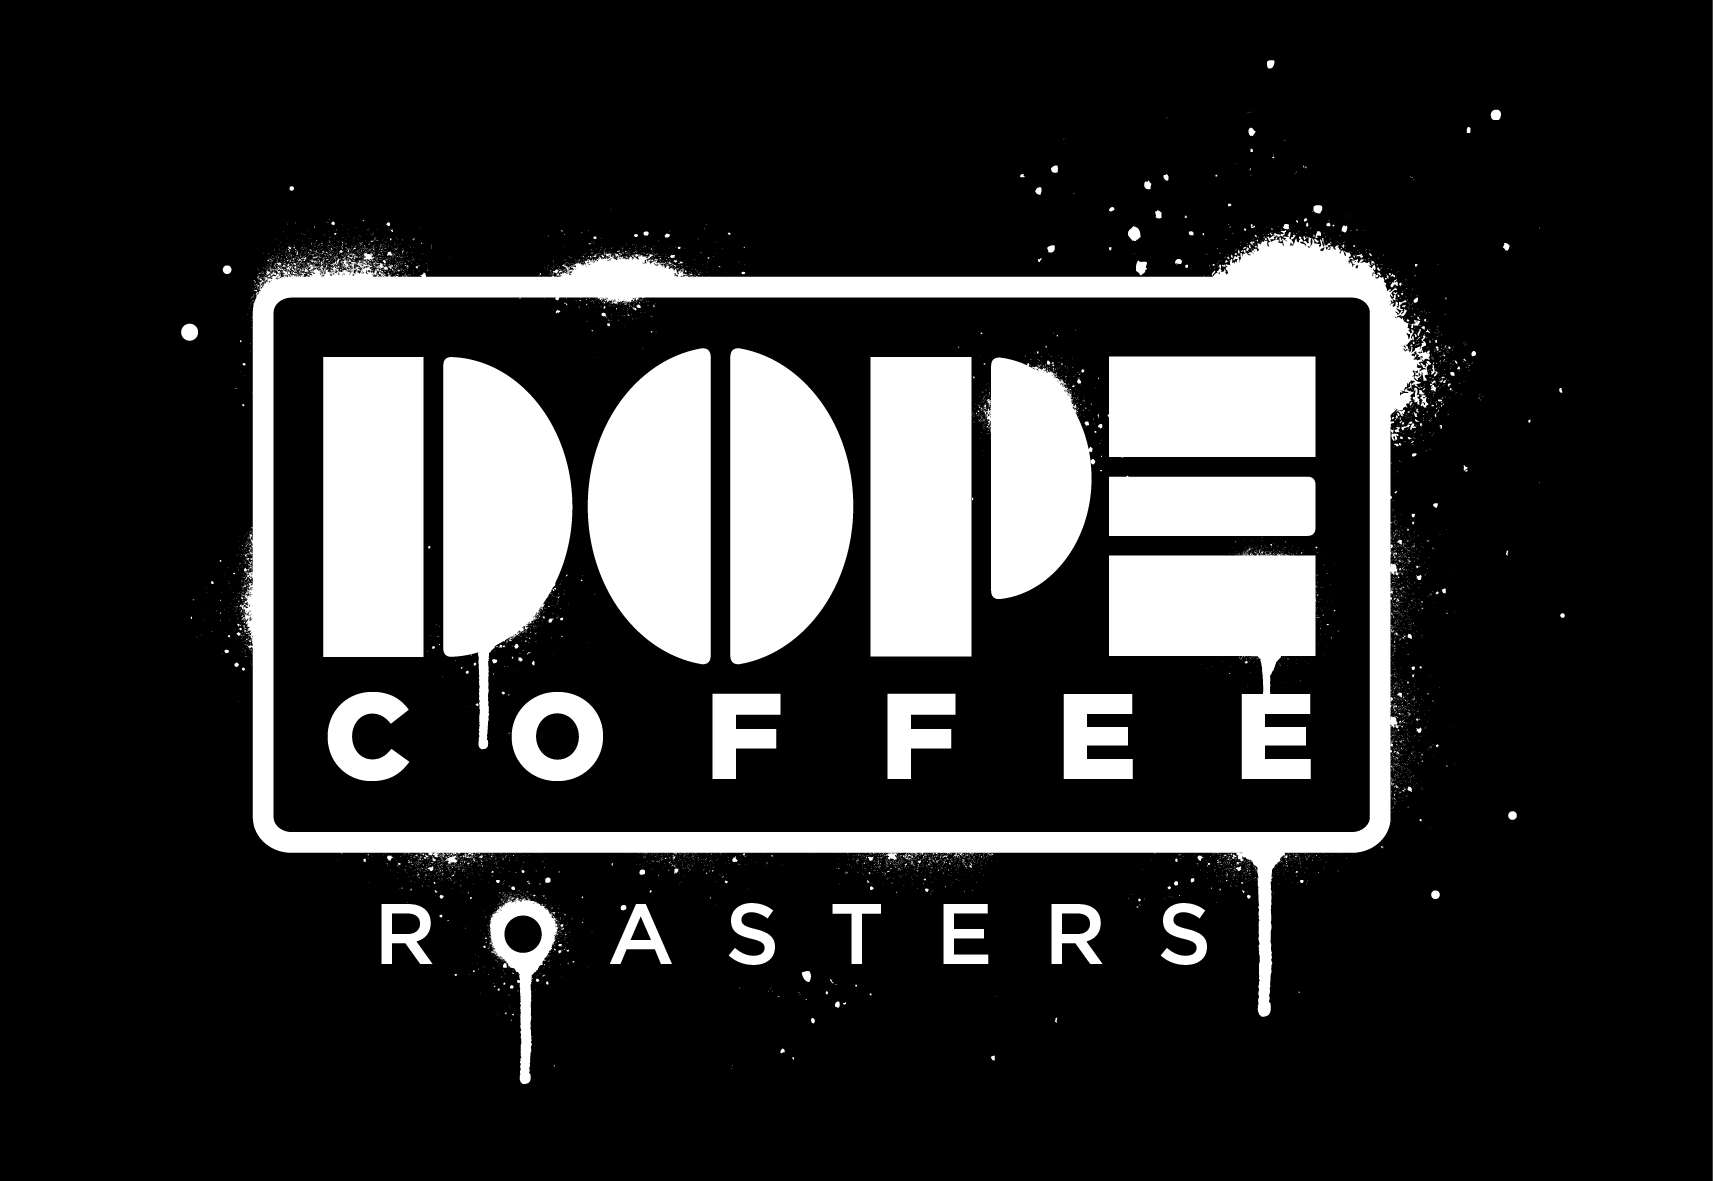 Dope Coffee